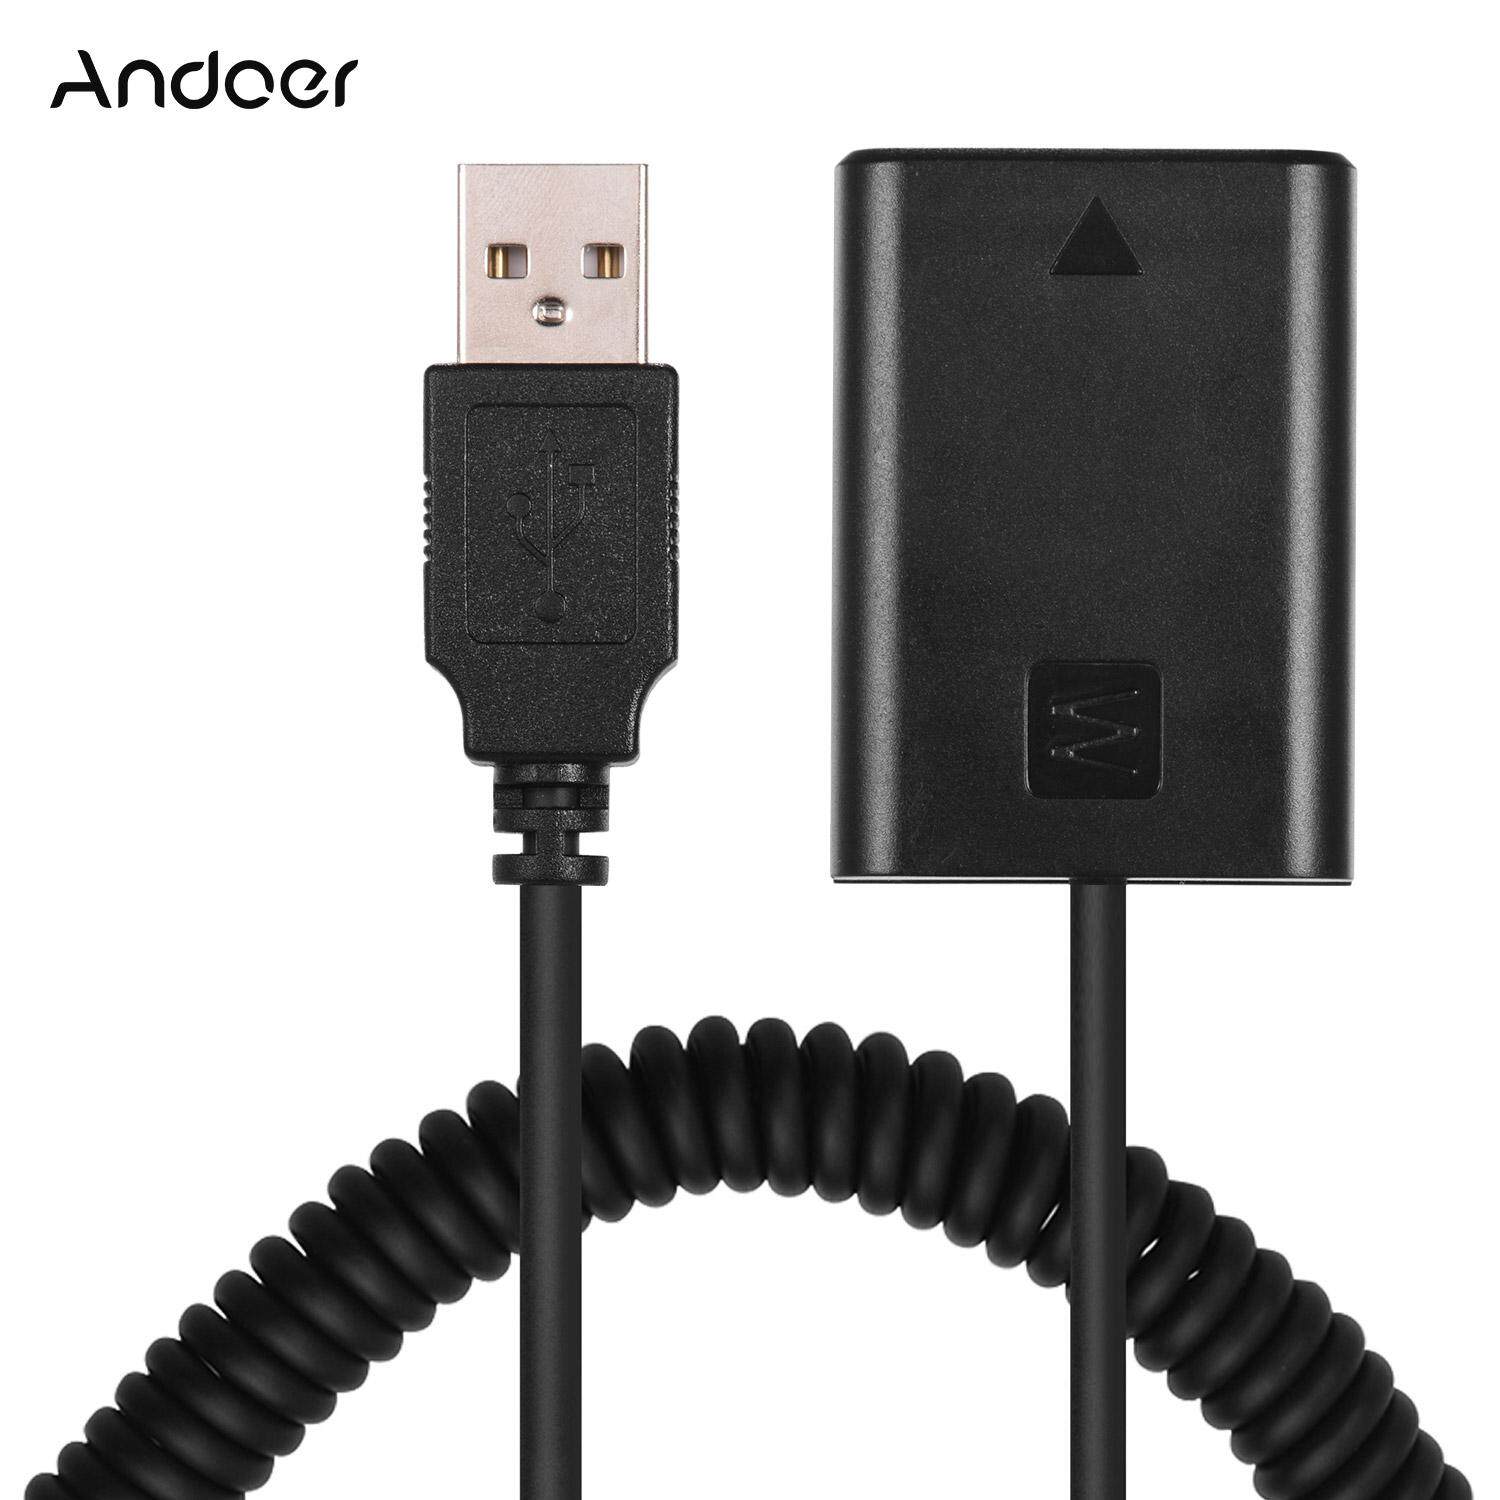 Andoer NP-FW50 USB 5V Bộ Pin Hình Dơi Giả Bộ Chuyển Đổi Khớp Nối Với Cáp